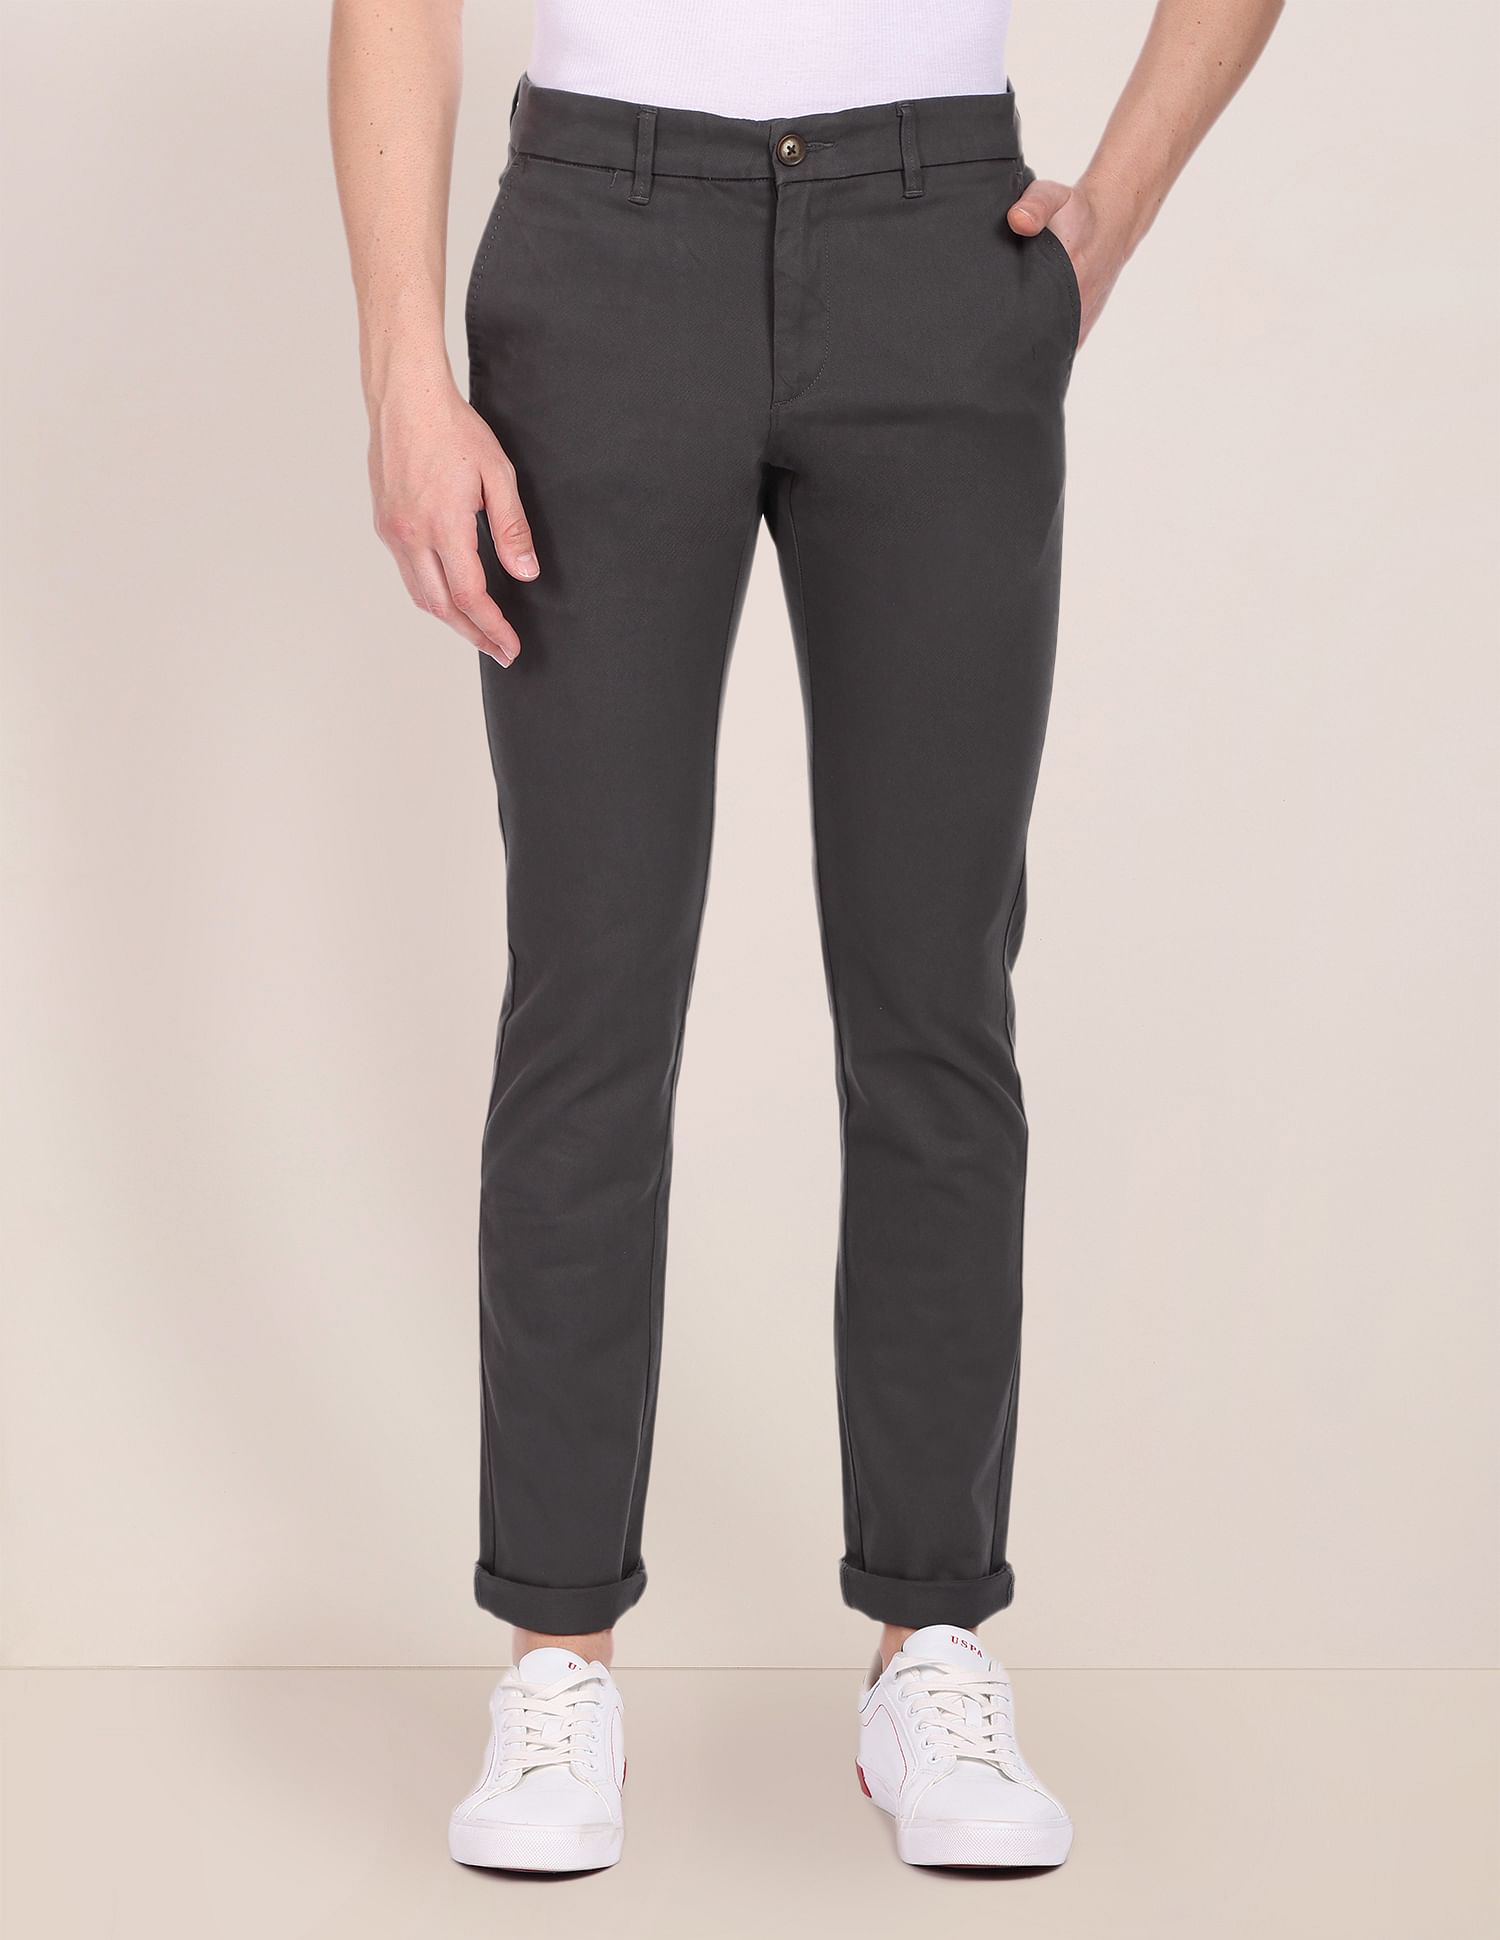 Buy Highlander Light Grey Slim Fit Casual Trouser for Men Online at Rs799   Ketch